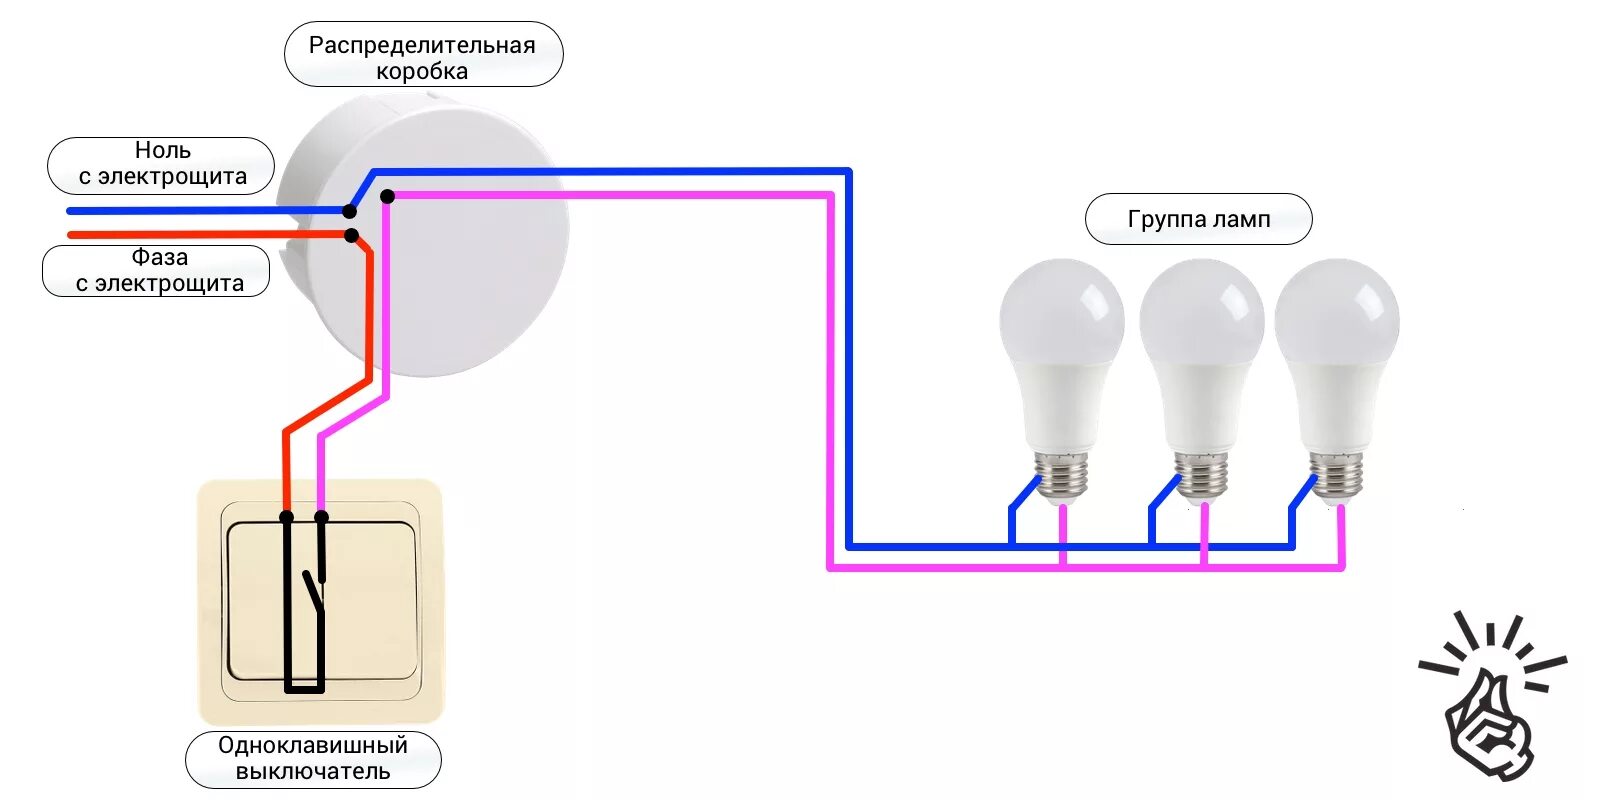 Схема подключения одноклавишного выключателя на две лампочки. Схема подключения одноклавишного выключателя на две лампы. Схема подключения одноклавишного выключателя к лампе. Схема подключения выключателя одноклавишного к 2 лампочкам. Как подключить выключатель дома